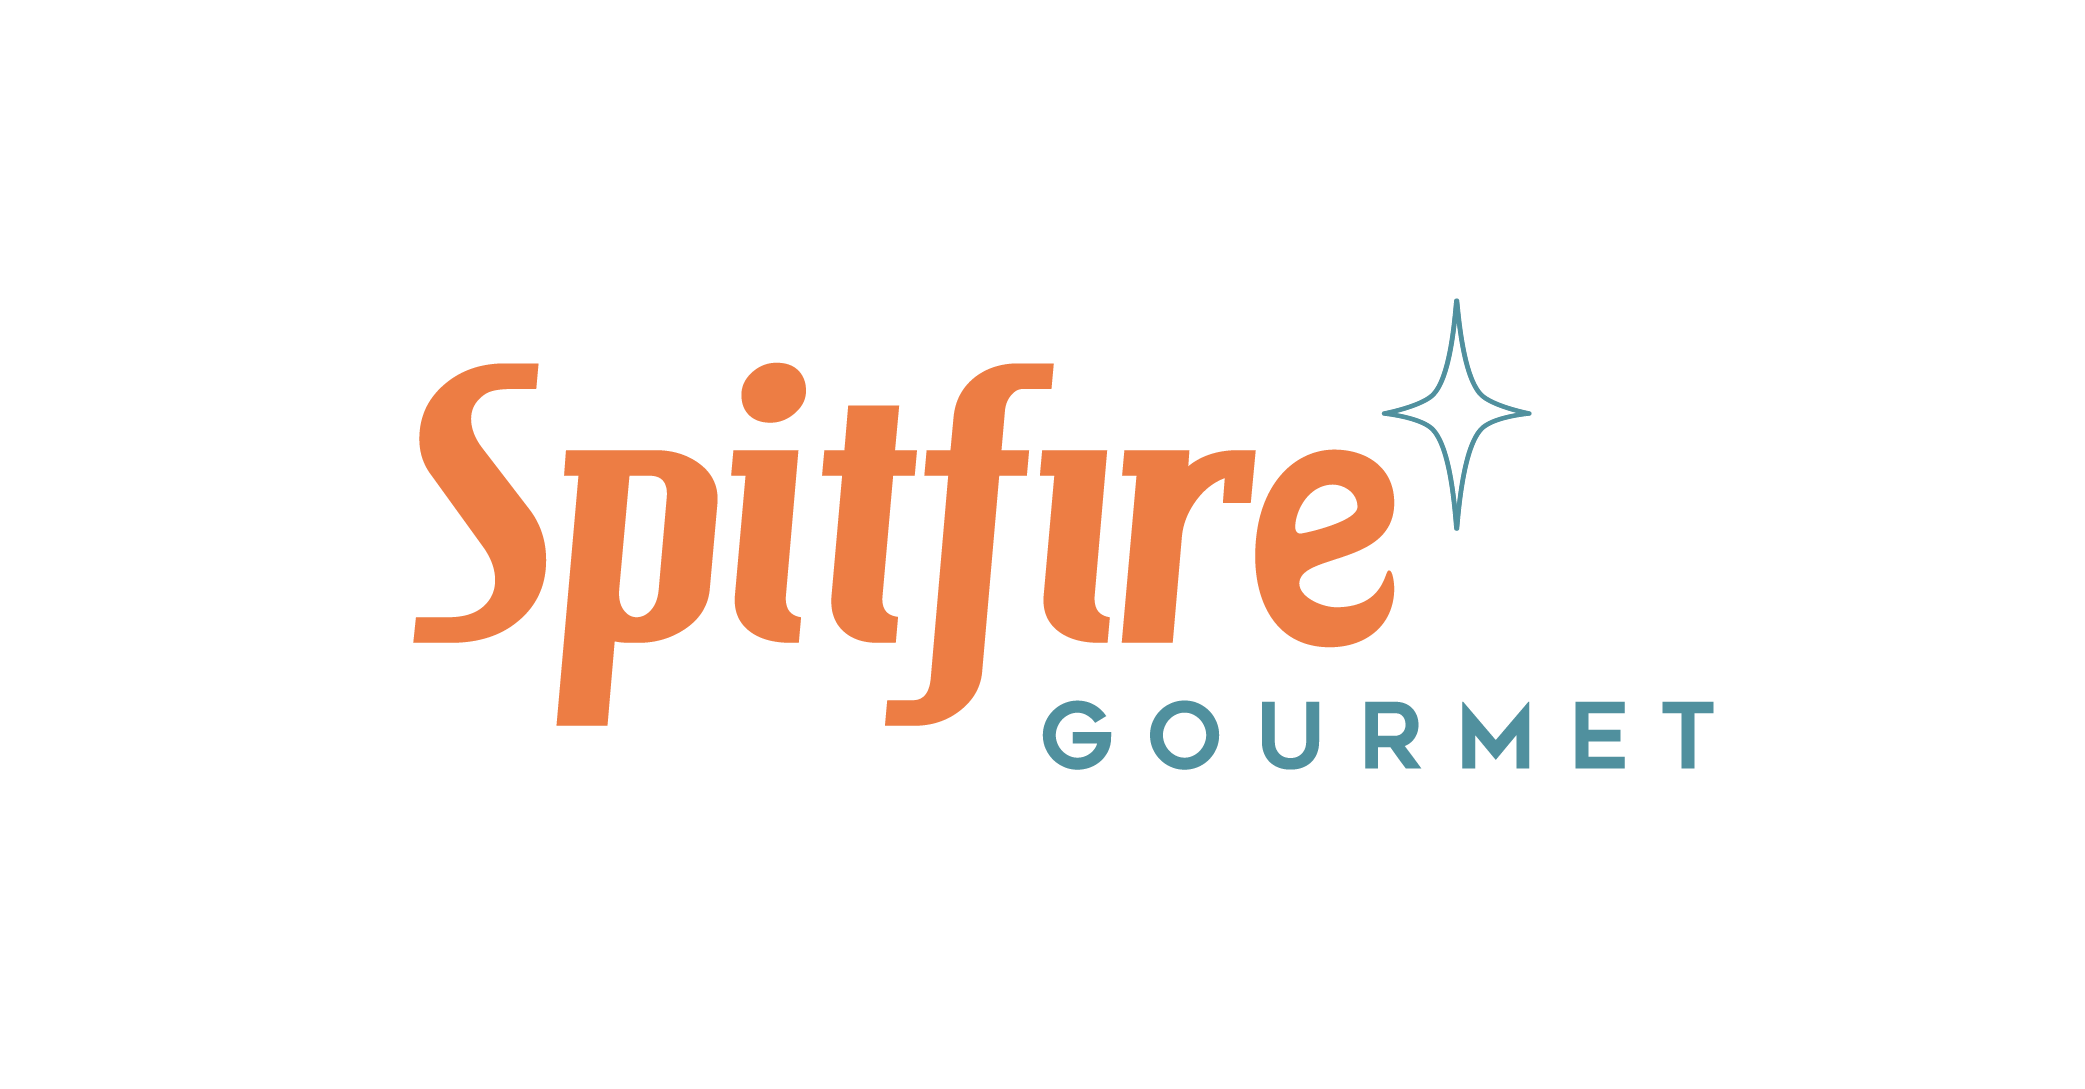 Spitfire Gourmet